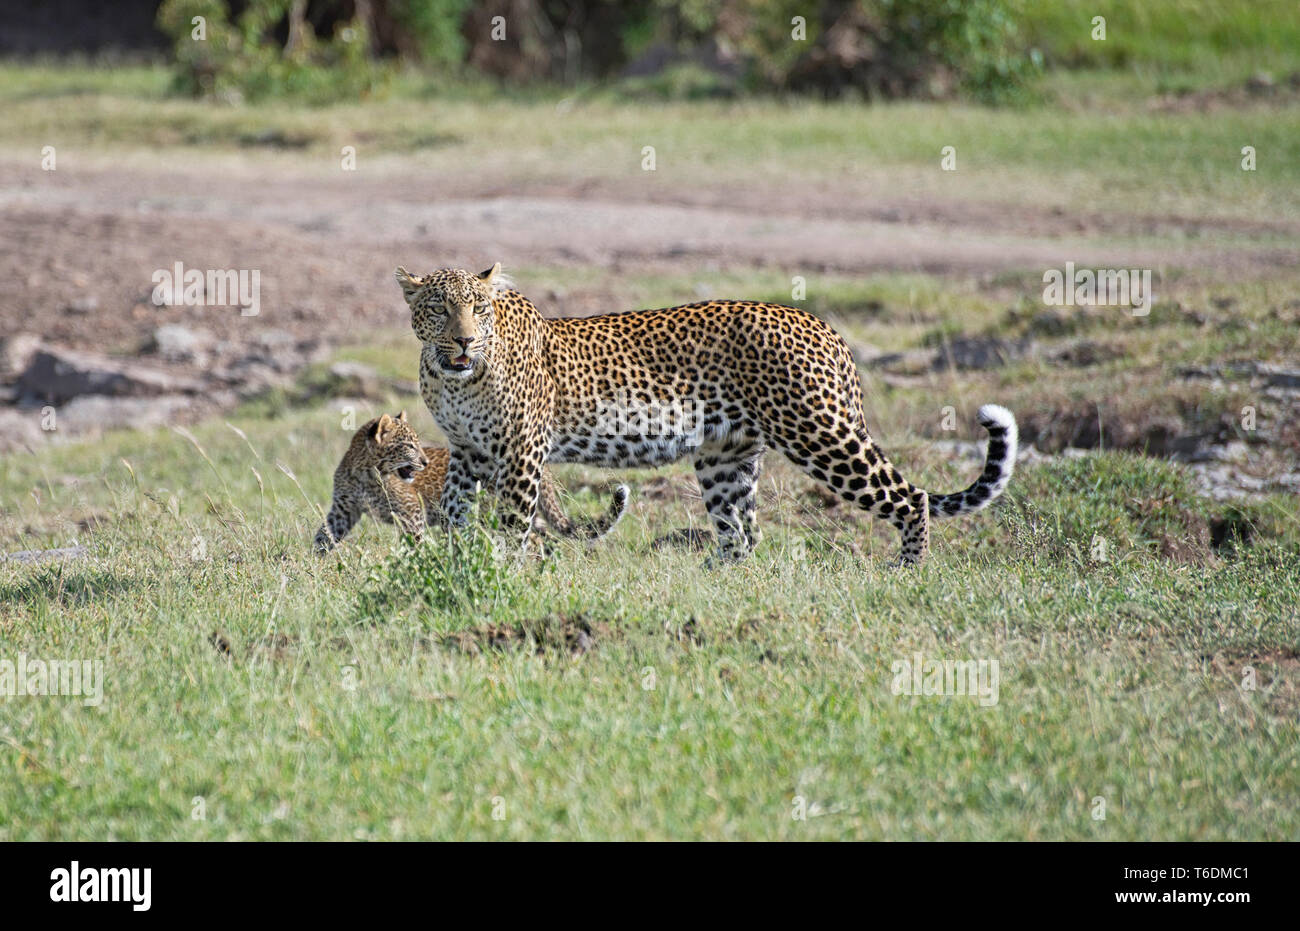 Weibliche Leopard (Panthera pardus) und Cub. Dies ist die Frau als Bild bekannt, in der OLARE Motorogi Conservancy, Kenia am Rand der Masai Mara. Stockfoto